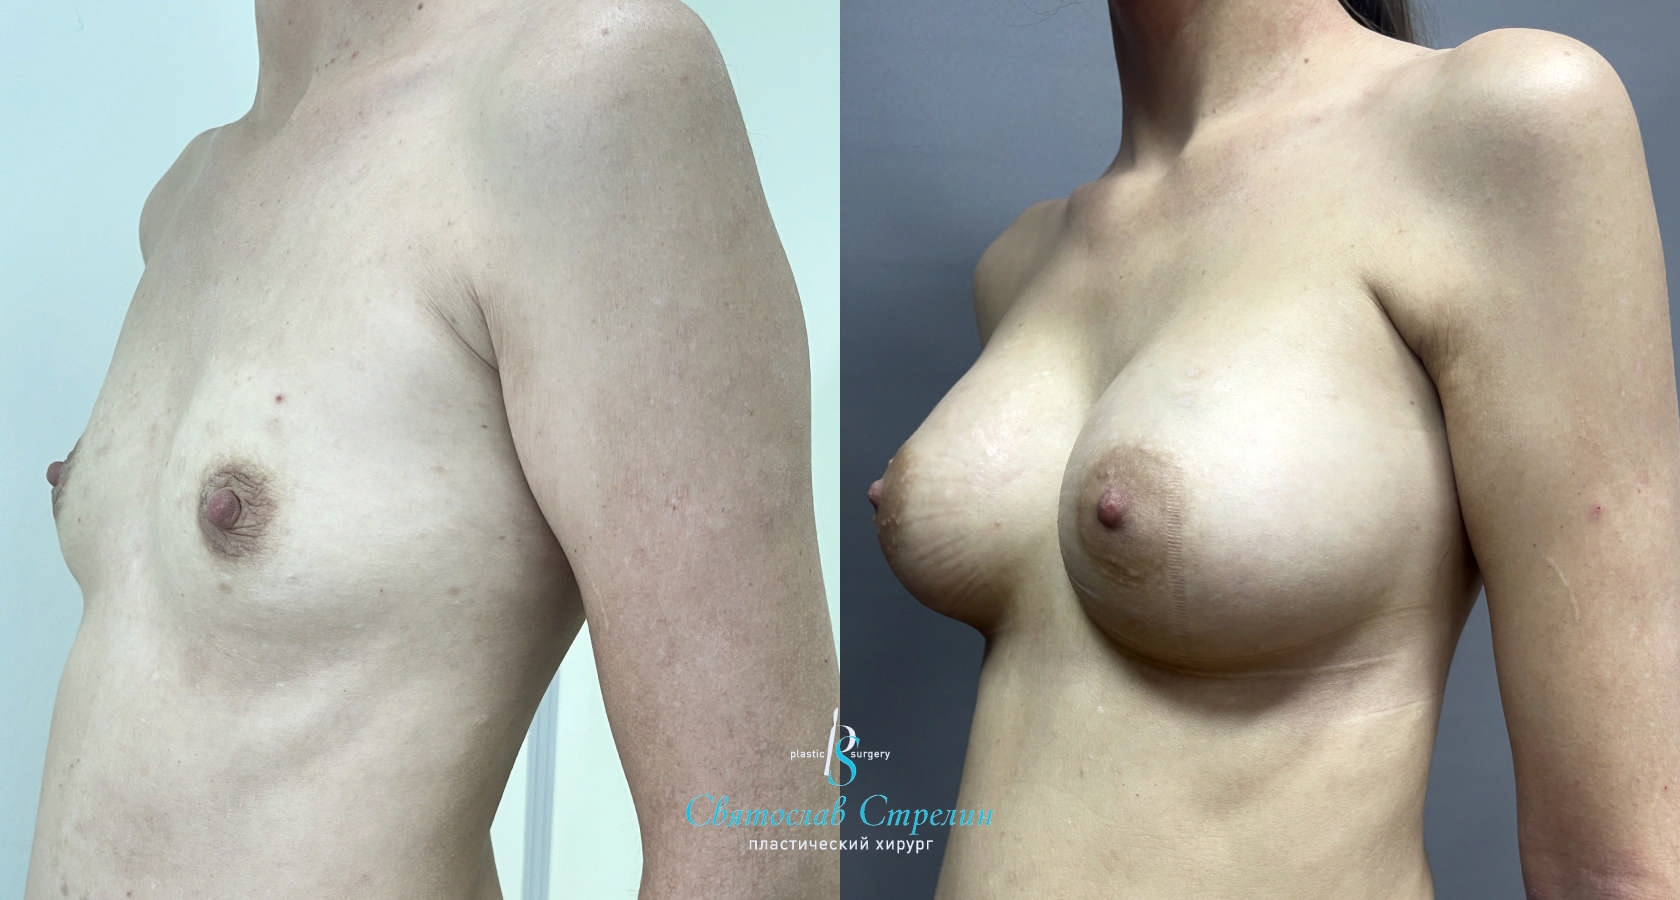 Увеличение груди, 2 месяца после операции, импланты Силимед 320 мл, анатомические, средняяв ысота, высокая проекция, доступ подмышечный